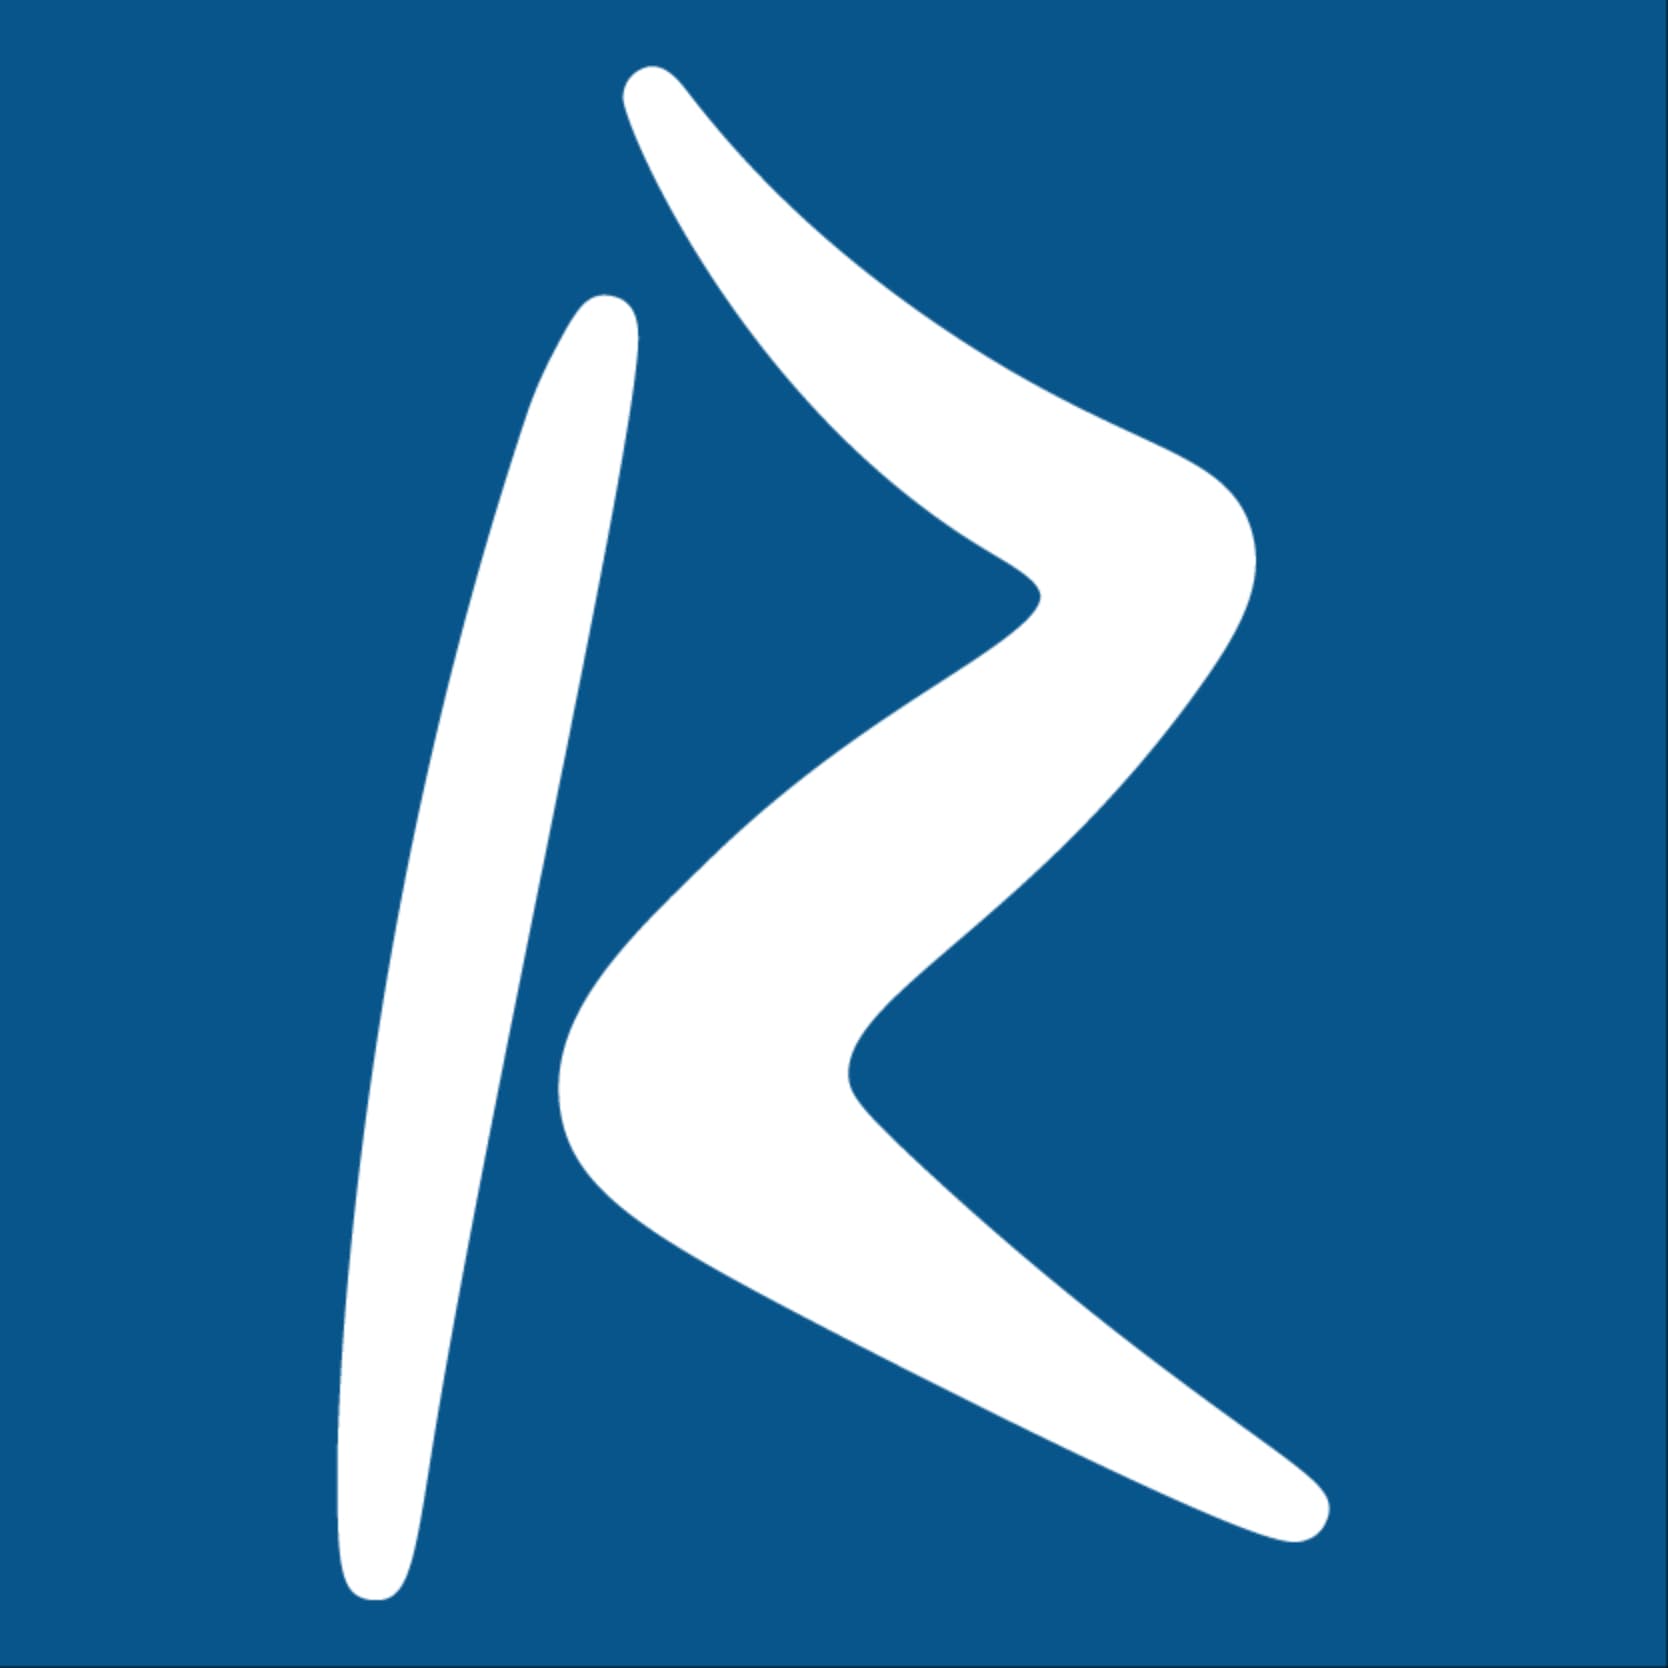 Reczee's logo